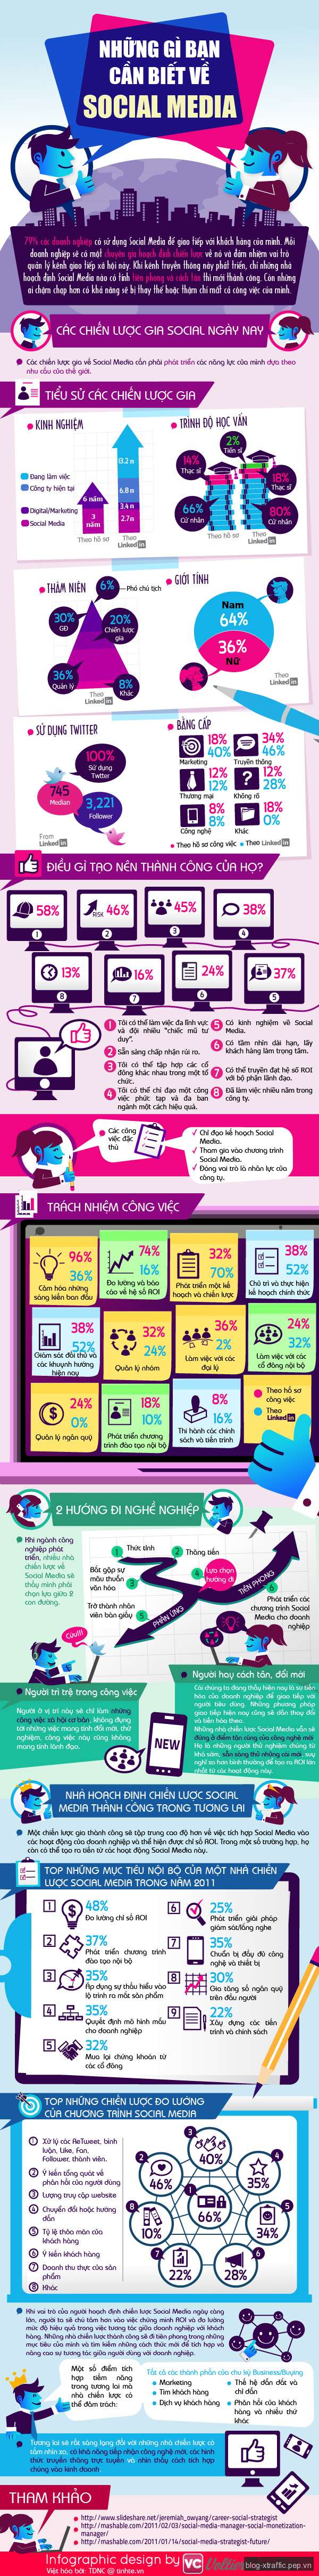 [Infographic] Những điều cần biết về Social Media - infographic Social Media - Social Media Marketing Digital Marketing Marketing